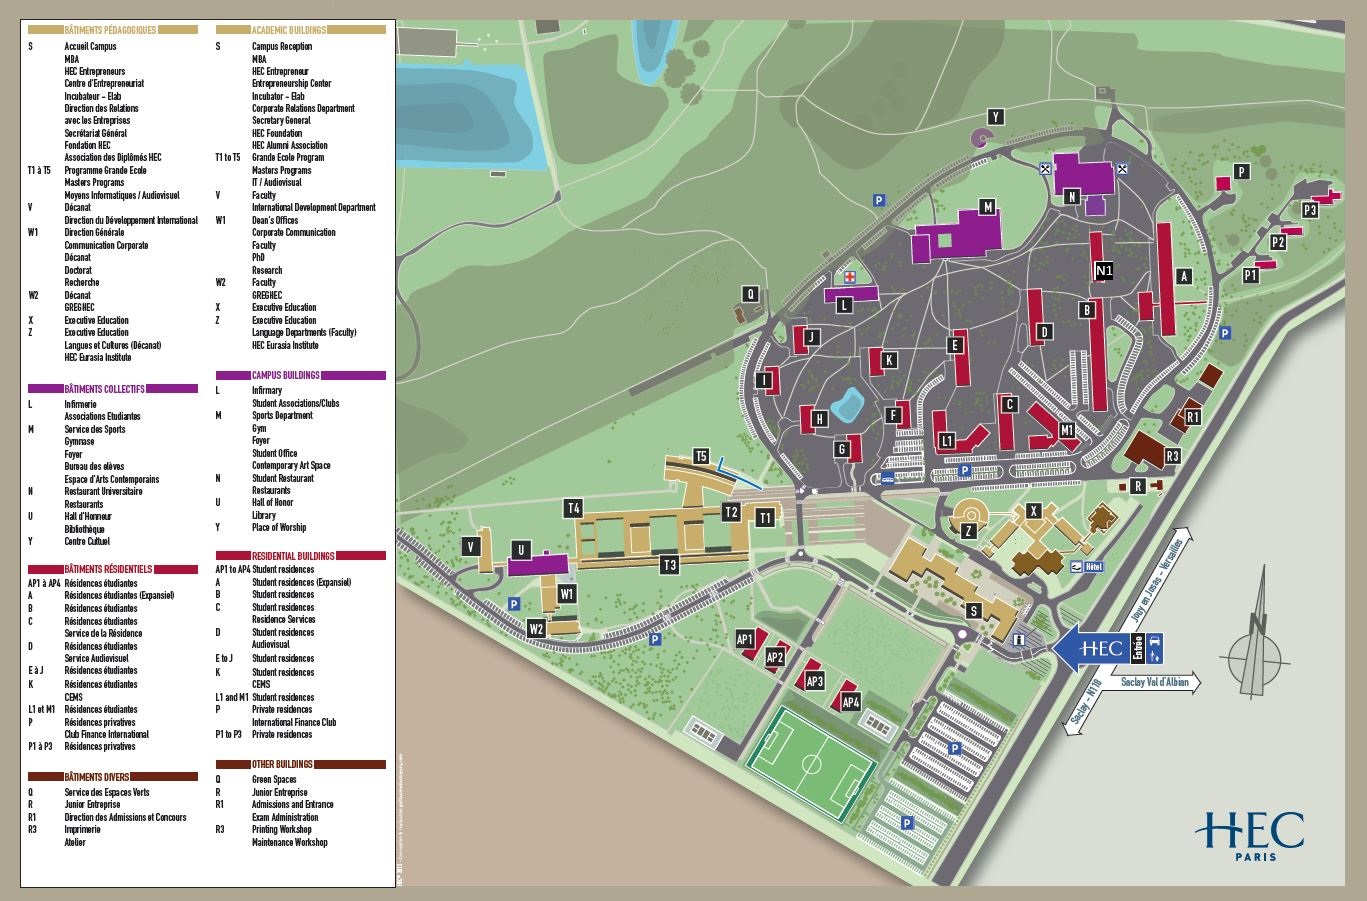 HEC Paris - Campus Map - 2021